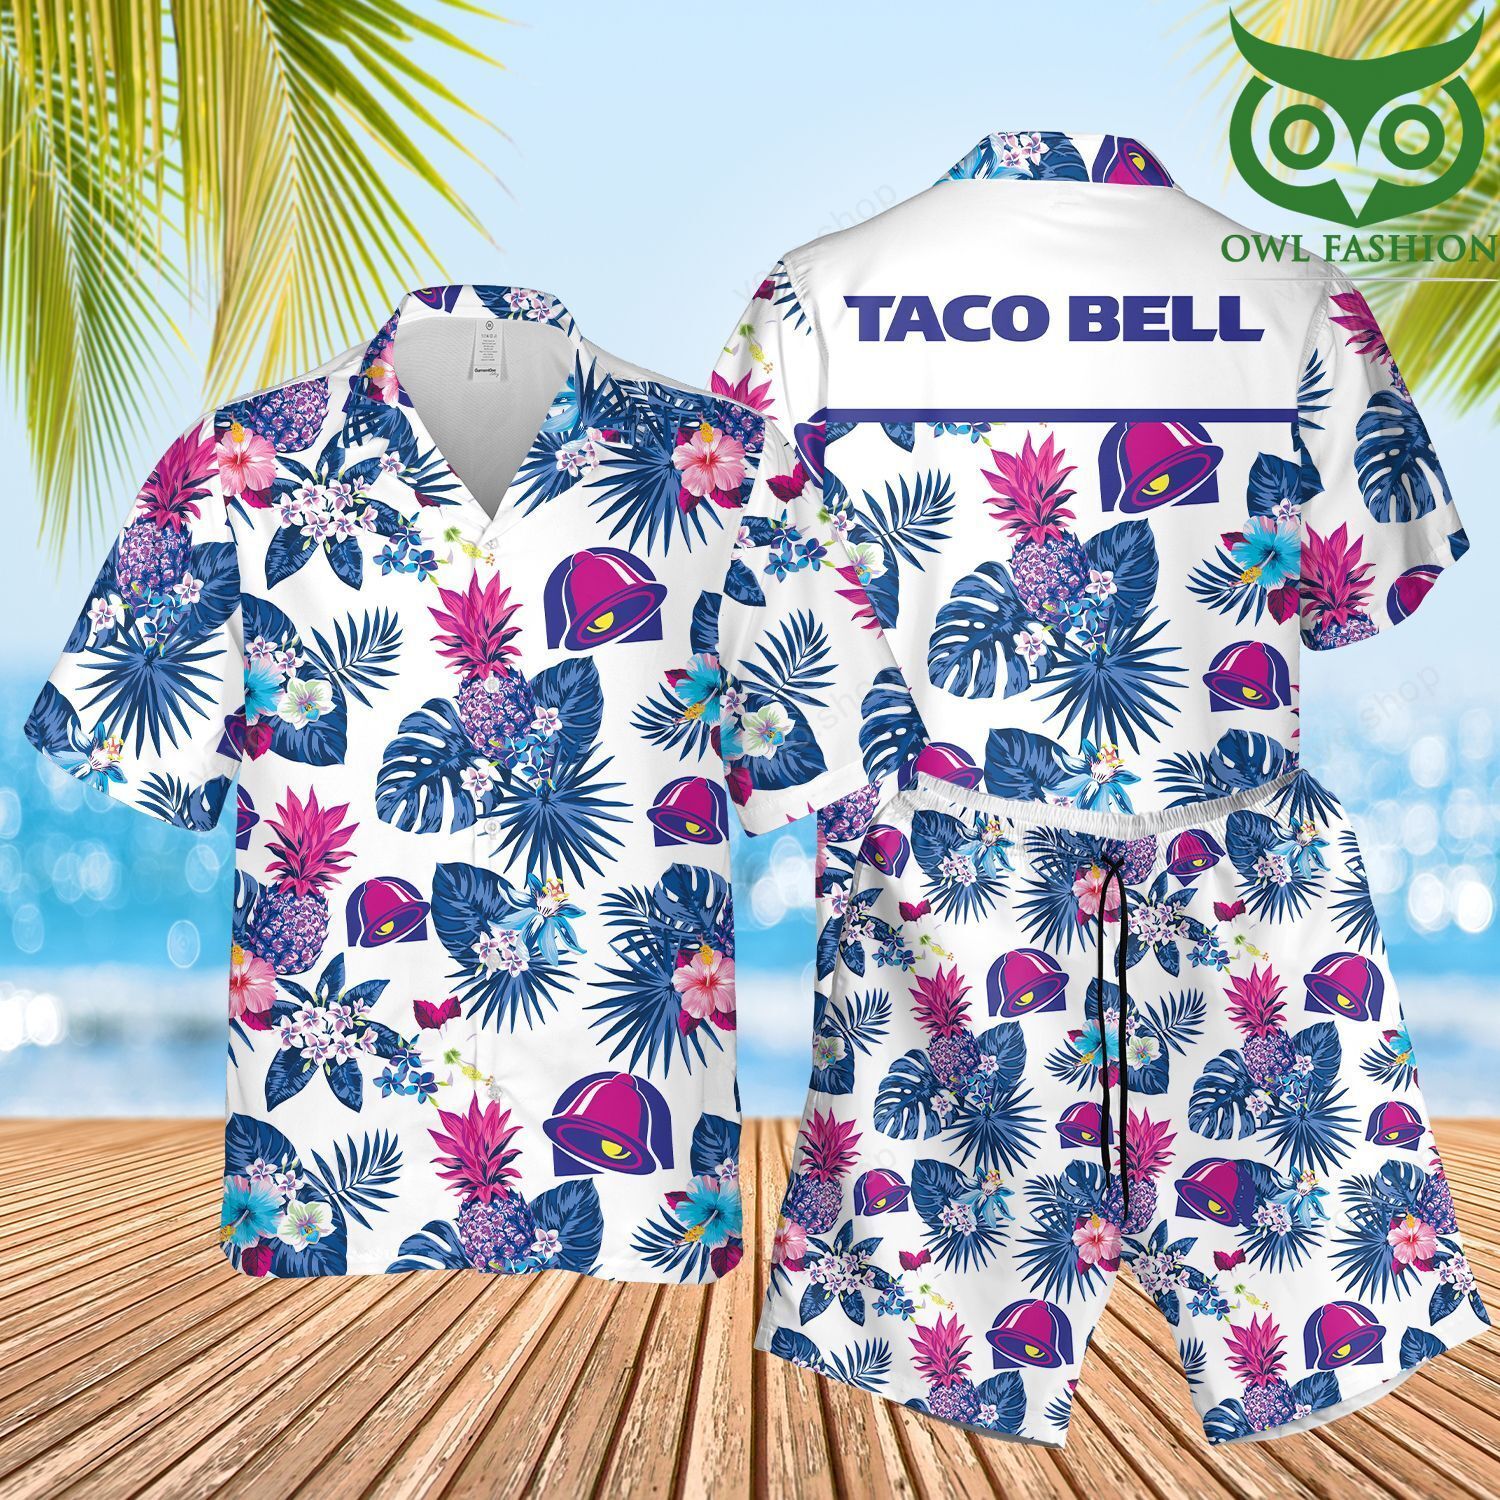 193 Taco Bell Floral Aloha Hawaiian Shirts and Summer Shorts